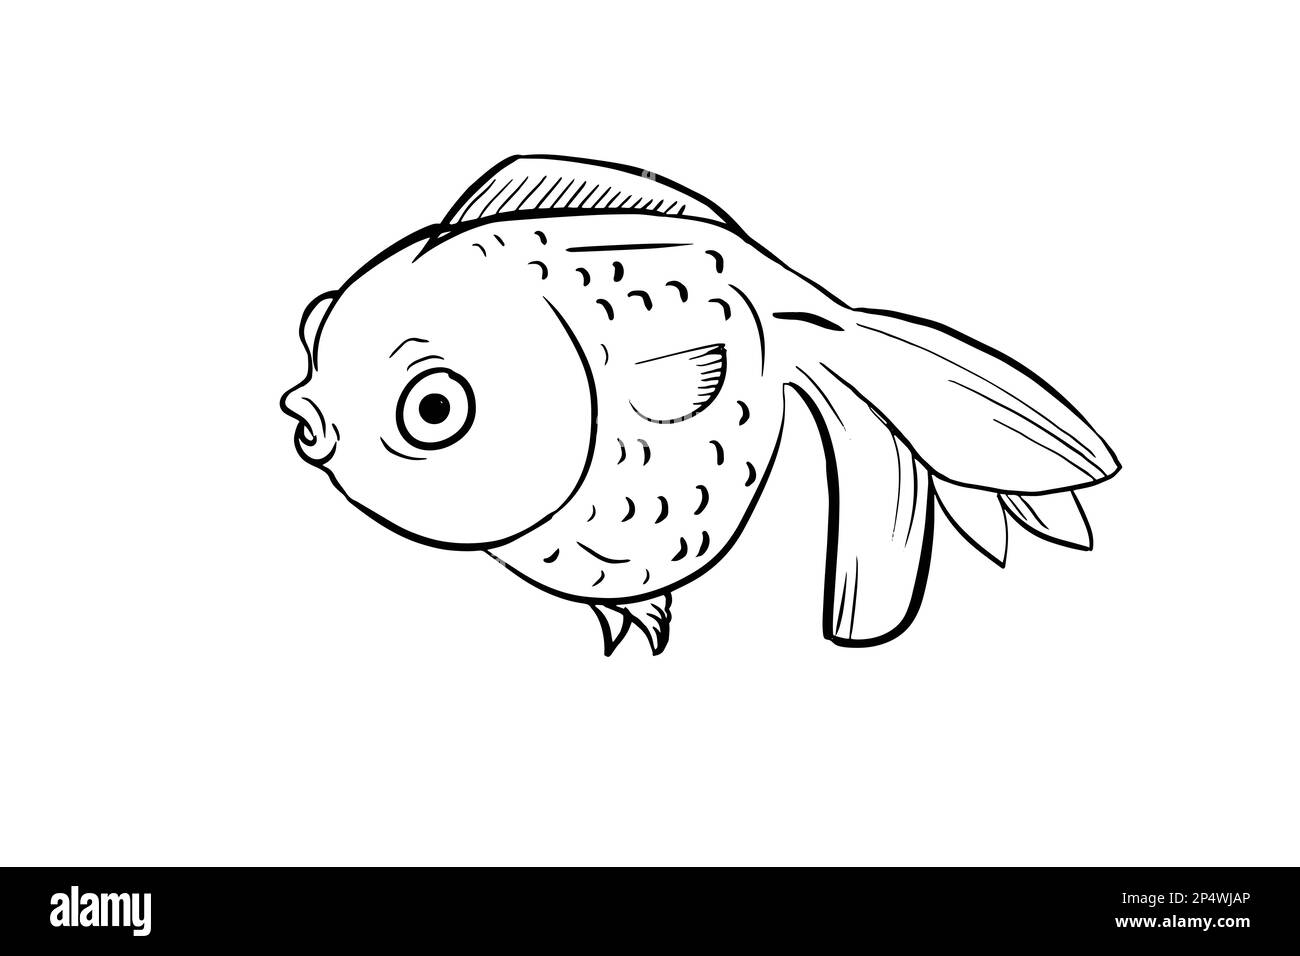 jolie page de coloriage de poissons rouges de dessin animé Banque D'Images